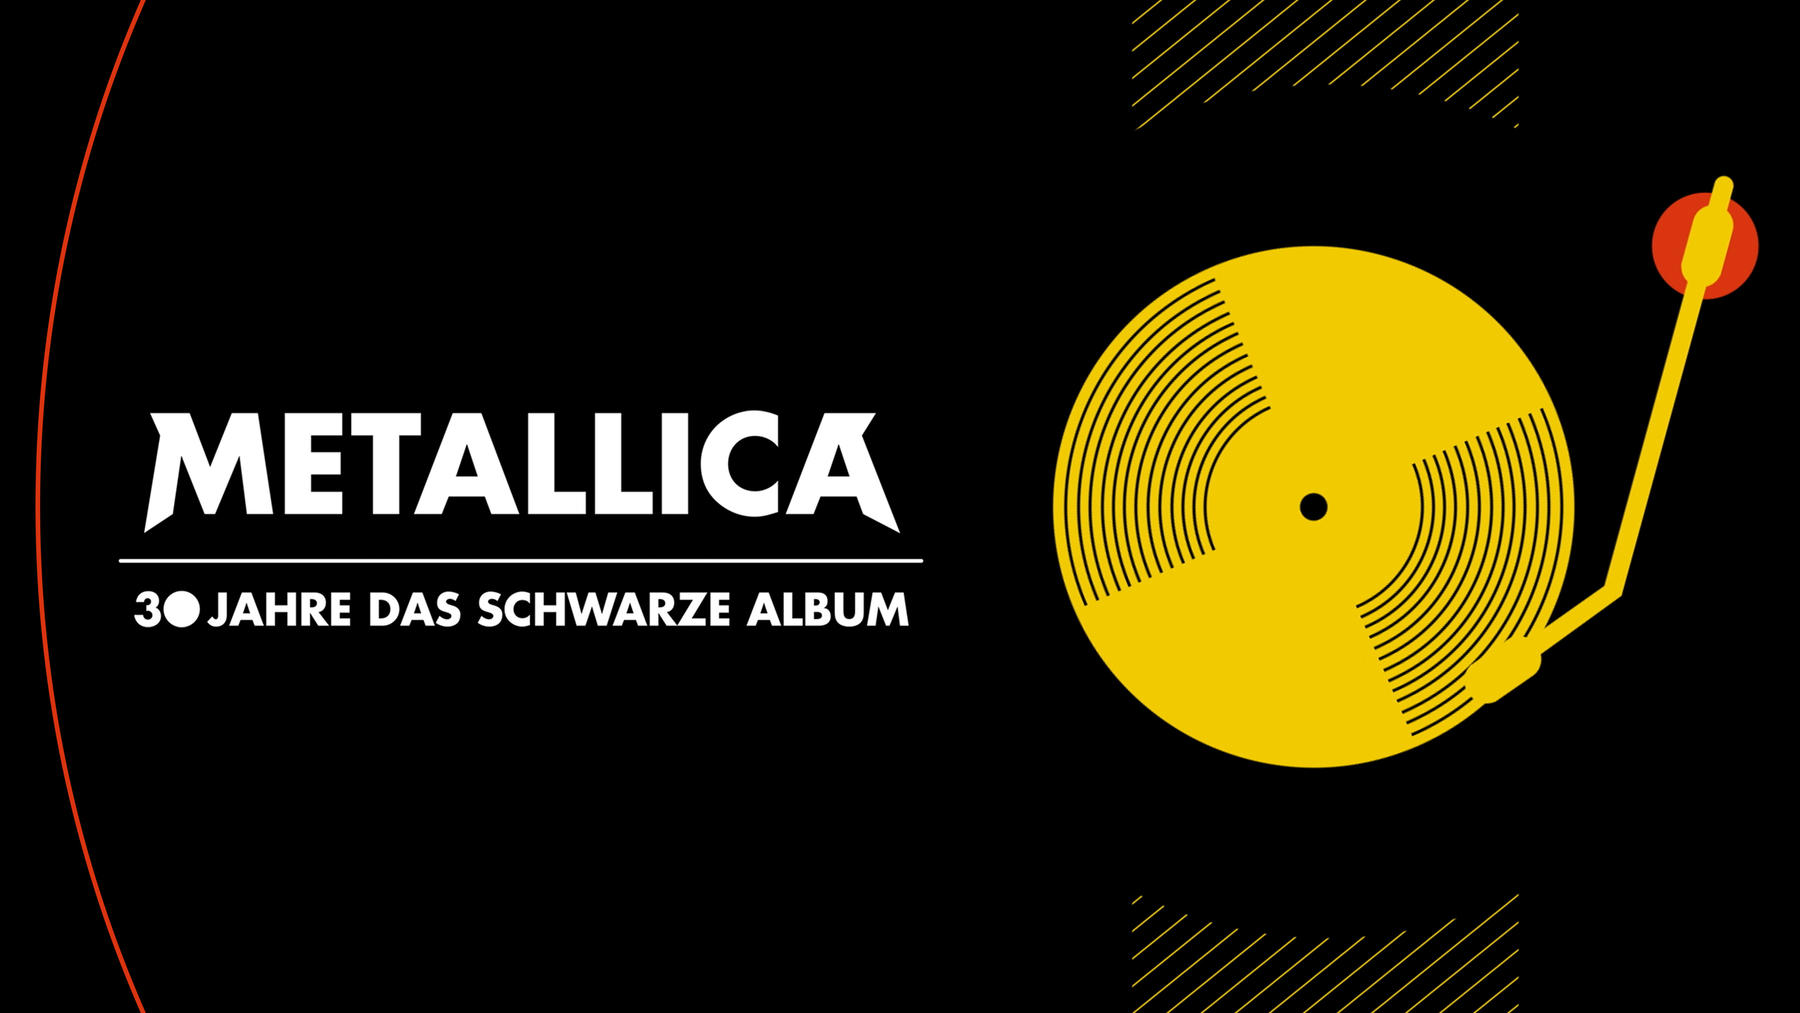 Metallica - 30 Jahre das schwarze Album